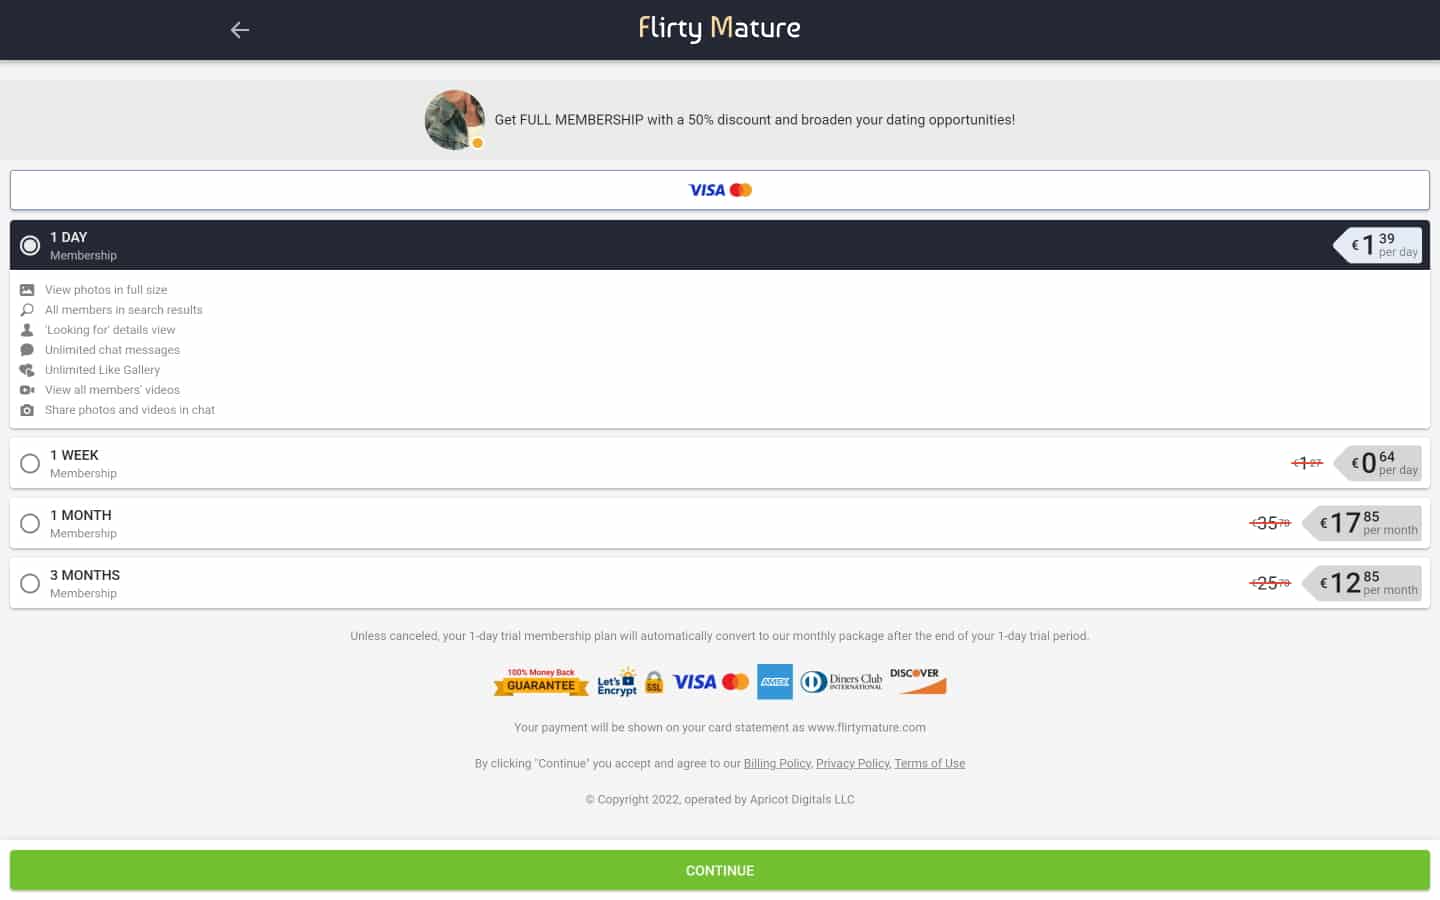 Review FlirtyMature.com payment